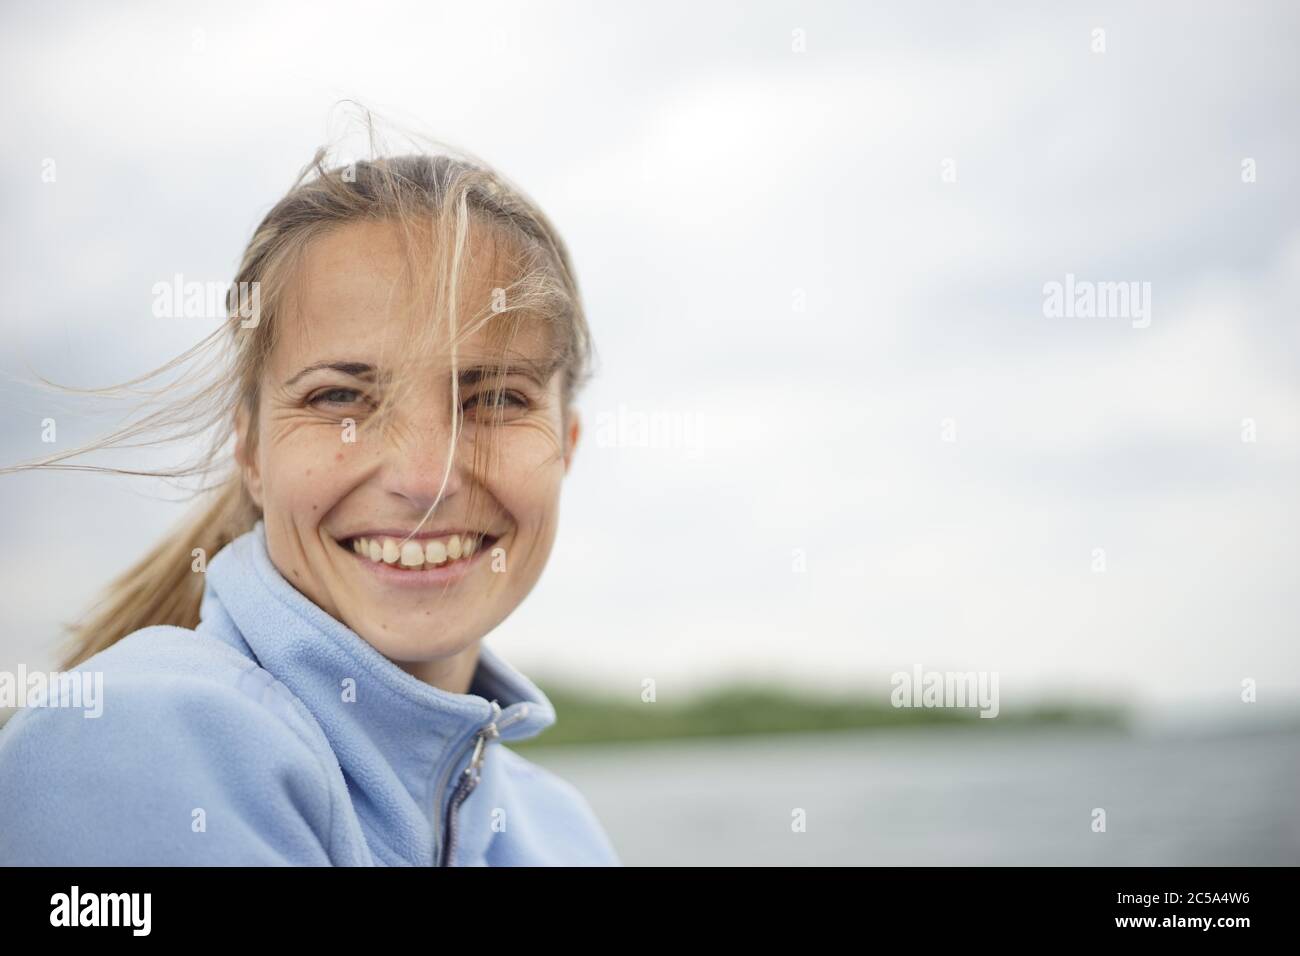 Un ritratto di una donna nel suo 20s/30s.She sta sorridendo e guardando la macchina fotografica. Sullo sfondo, si potrebbe vedere un corpo di acqua - lago, fiume, mare, ecc Foto Stock